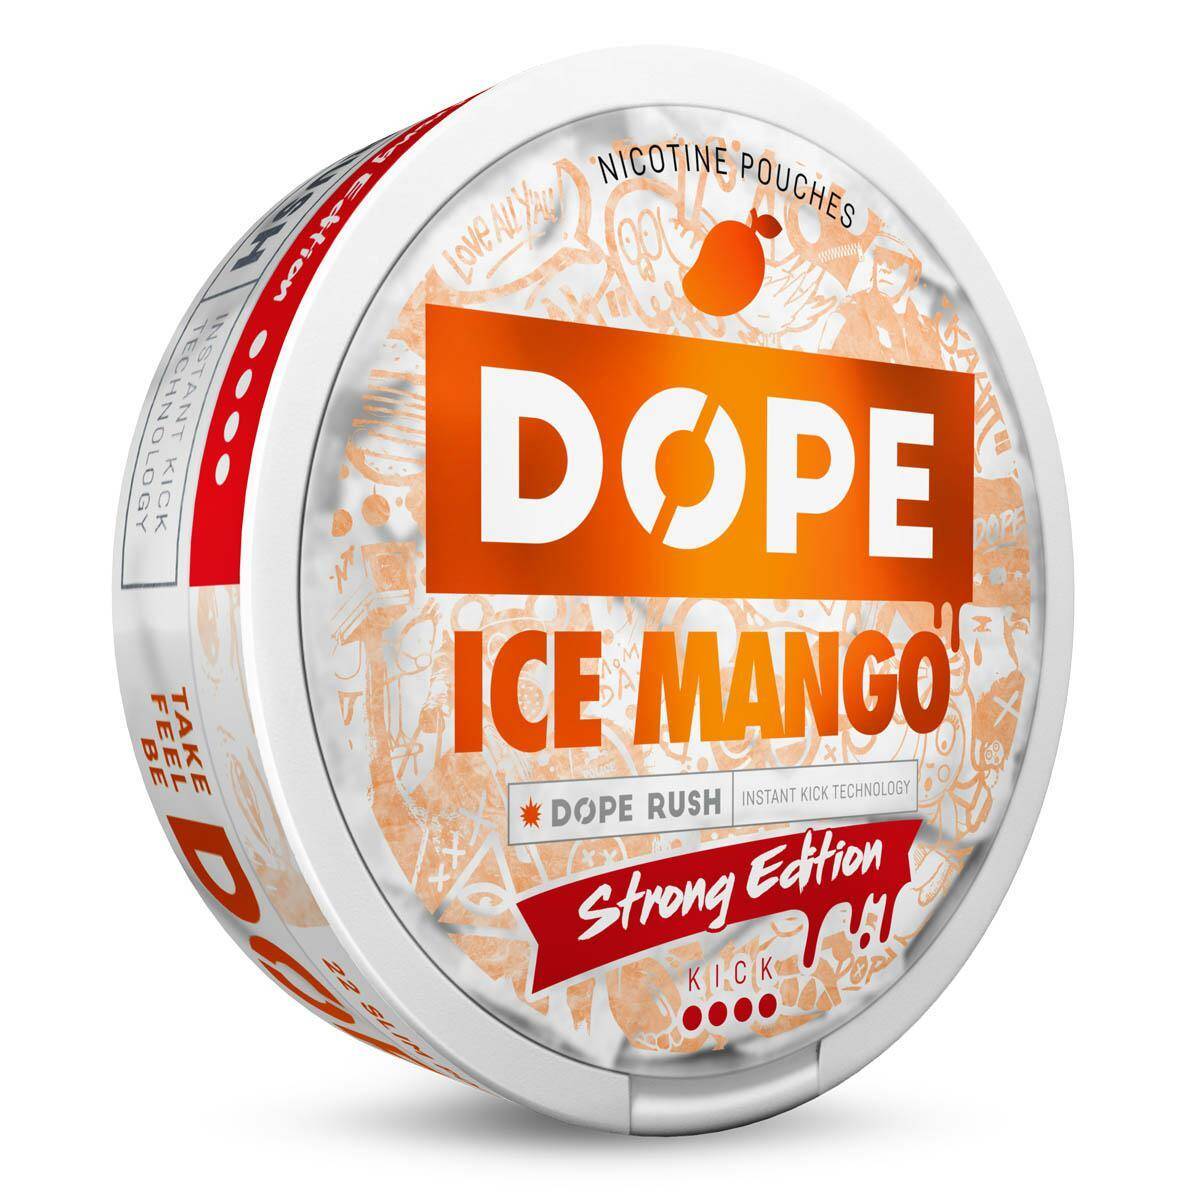 SNUS - Saszetki nikotynowe DOPE - Ice Mango 16mg/g (Zdjęcie 3)